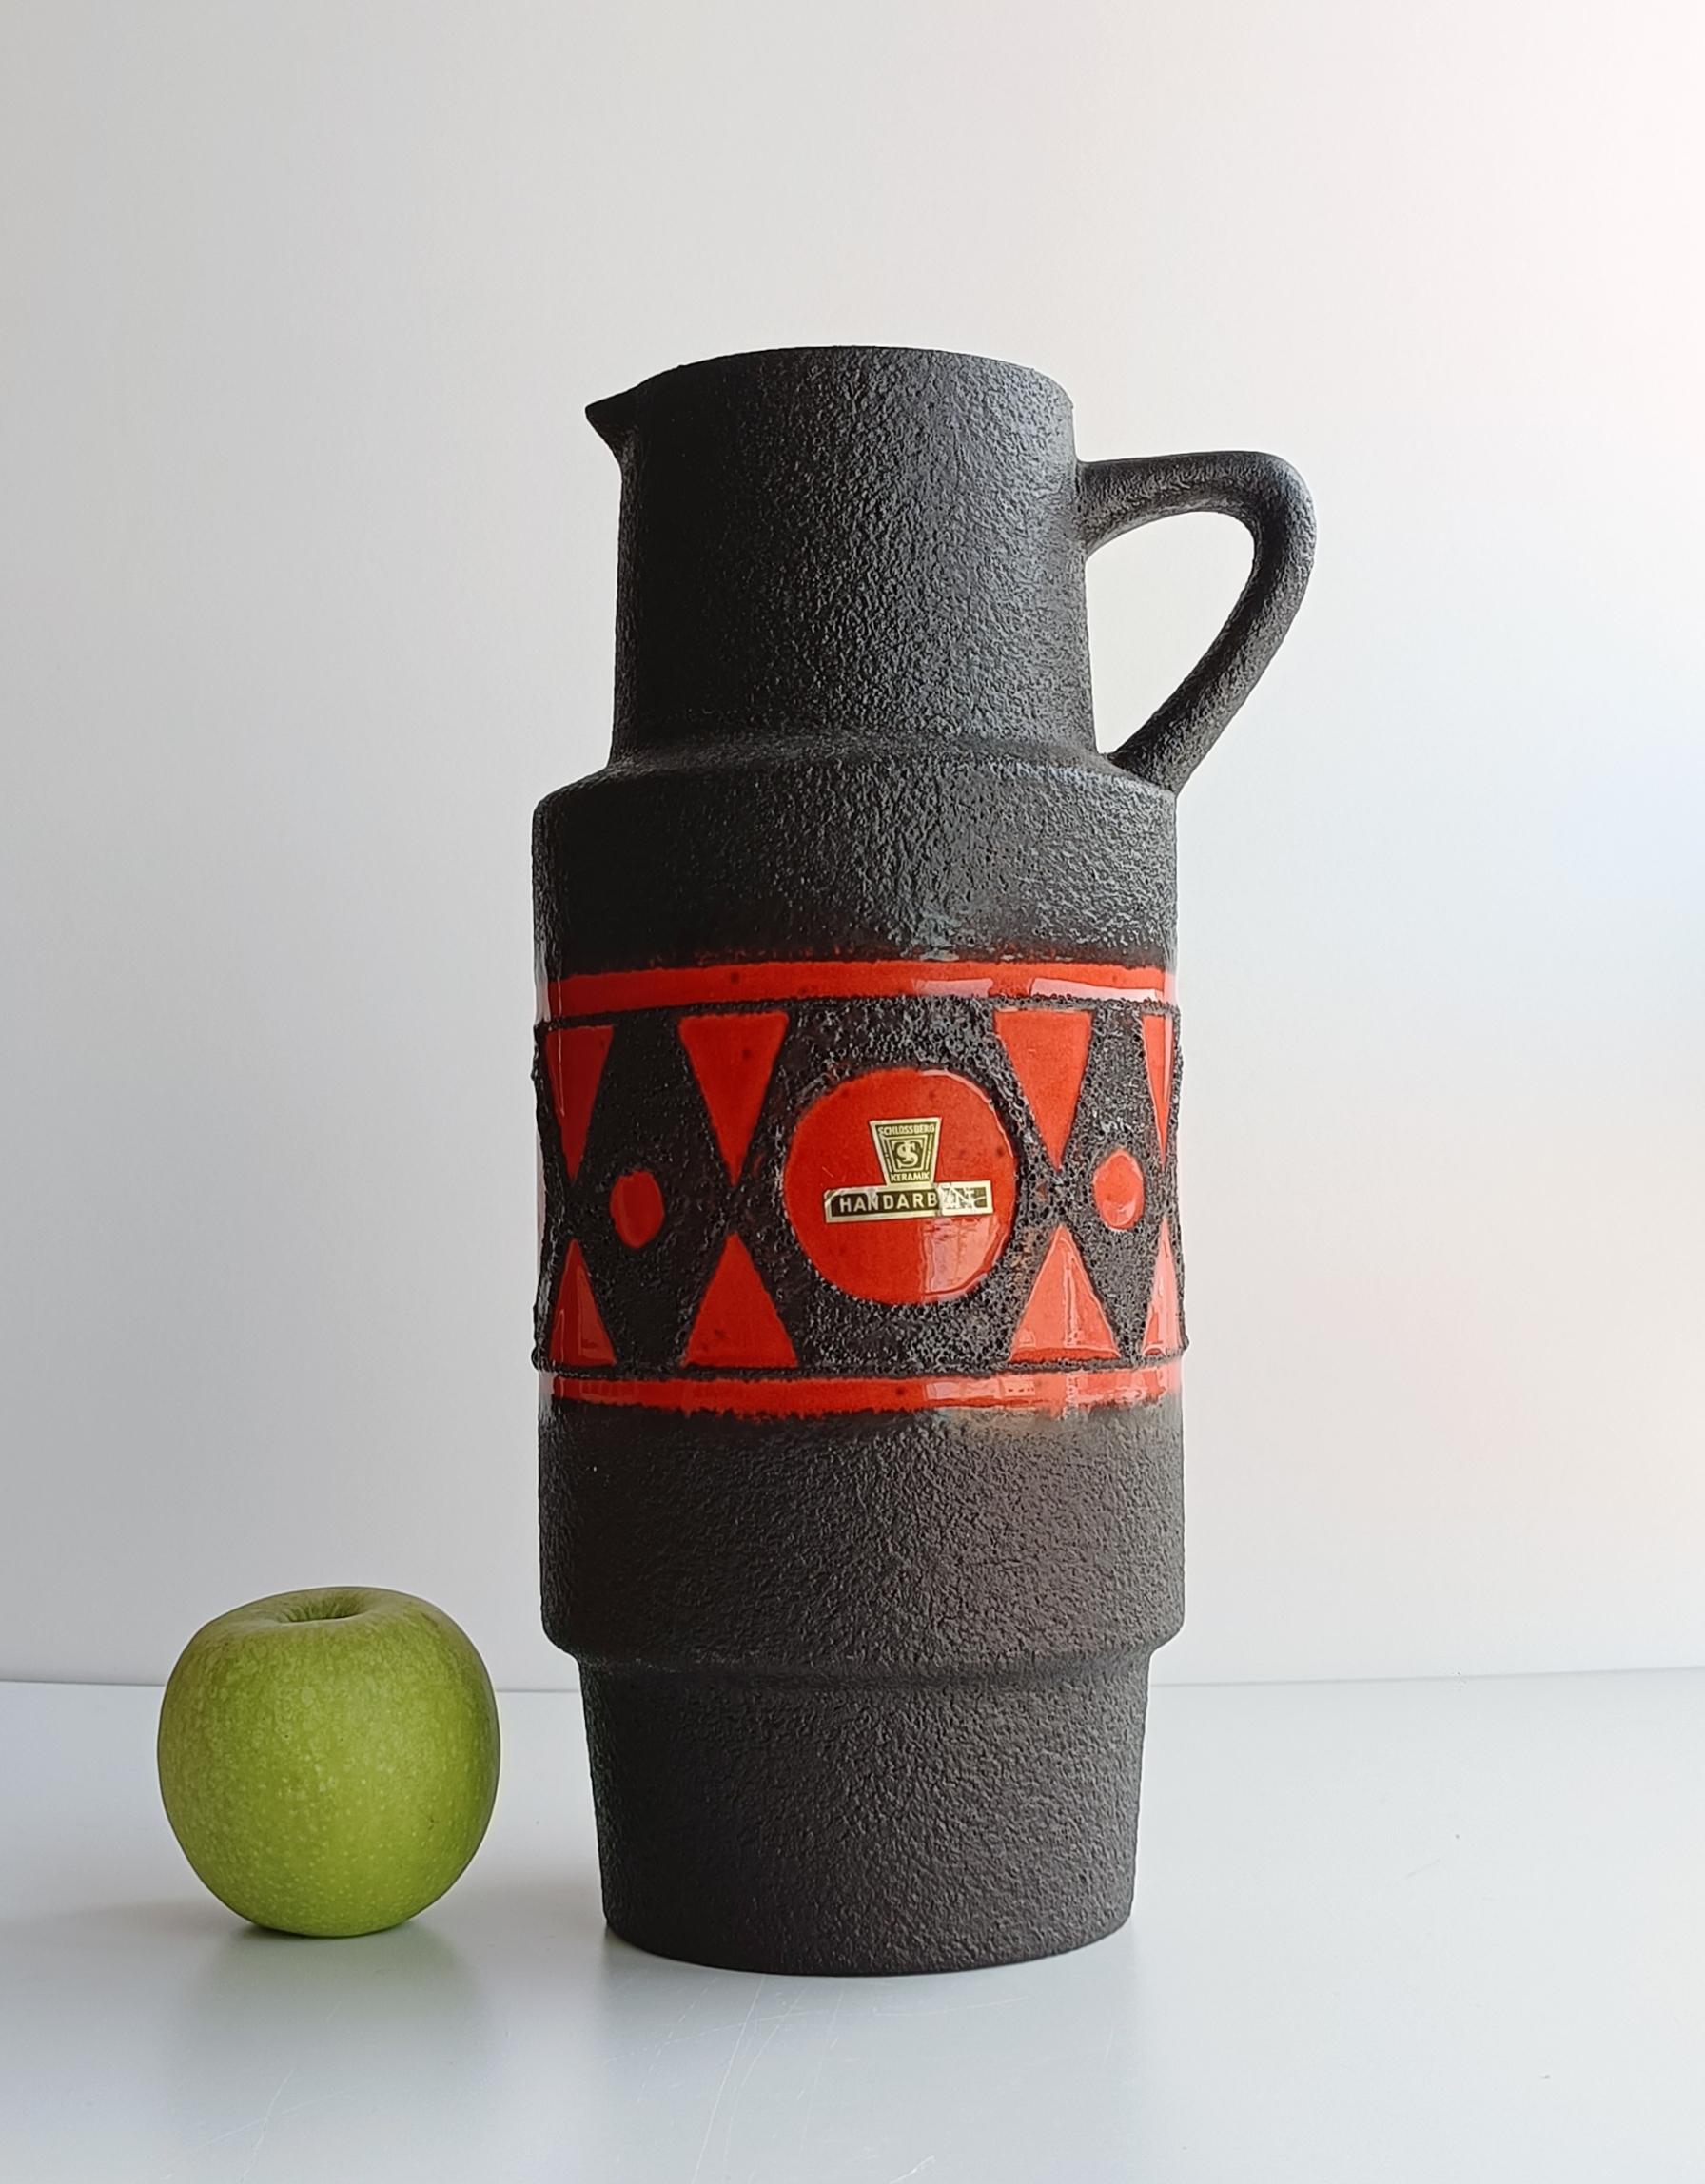 Ce vase-pichet Schlossberg, de la forme 279-35, est un exemple remarquable de la céramique ouest-allemande des années 1970. Ces pièces se caractérisent par leurs formes audacieuses, leurs couleurs vives et leurs glaçures expressives, qui présentent